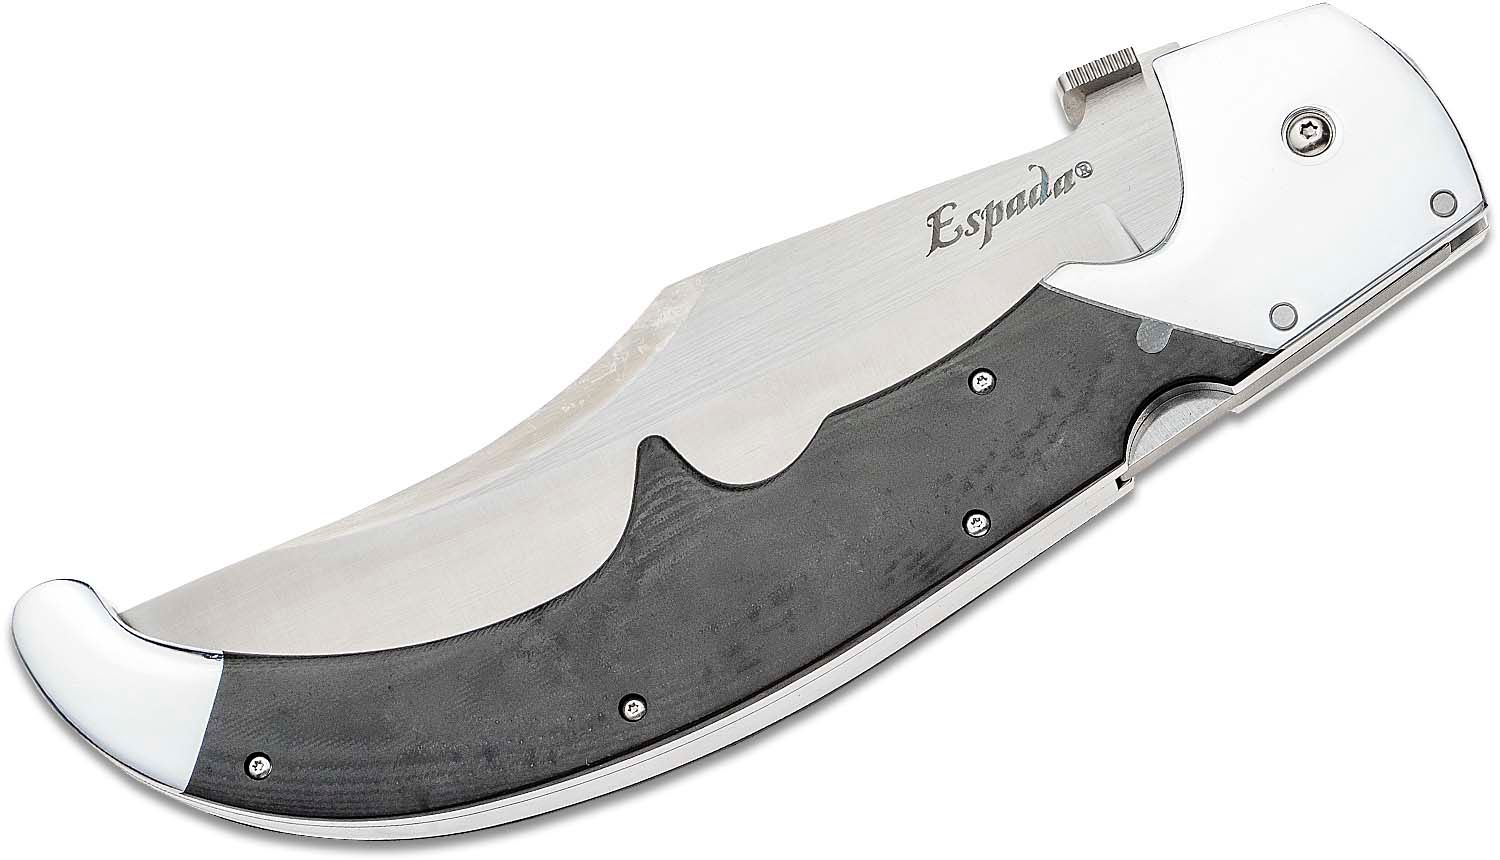 Cold Steel - Cuchillo Espada XL - COLECCIÓN PRIVADA - 62NX - cuchillo